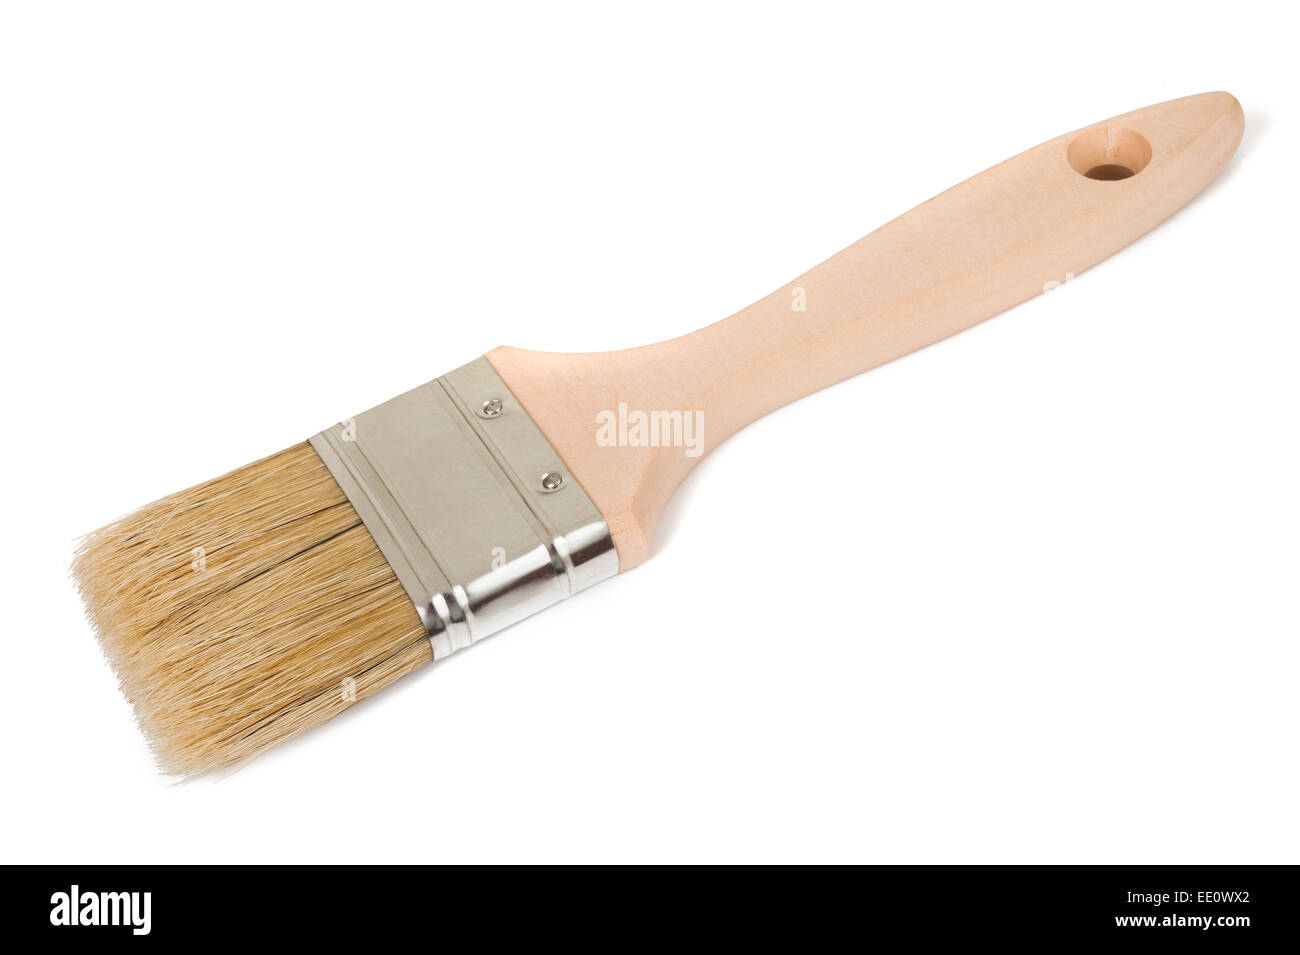 Paint brush isolated on white background Stock Photo